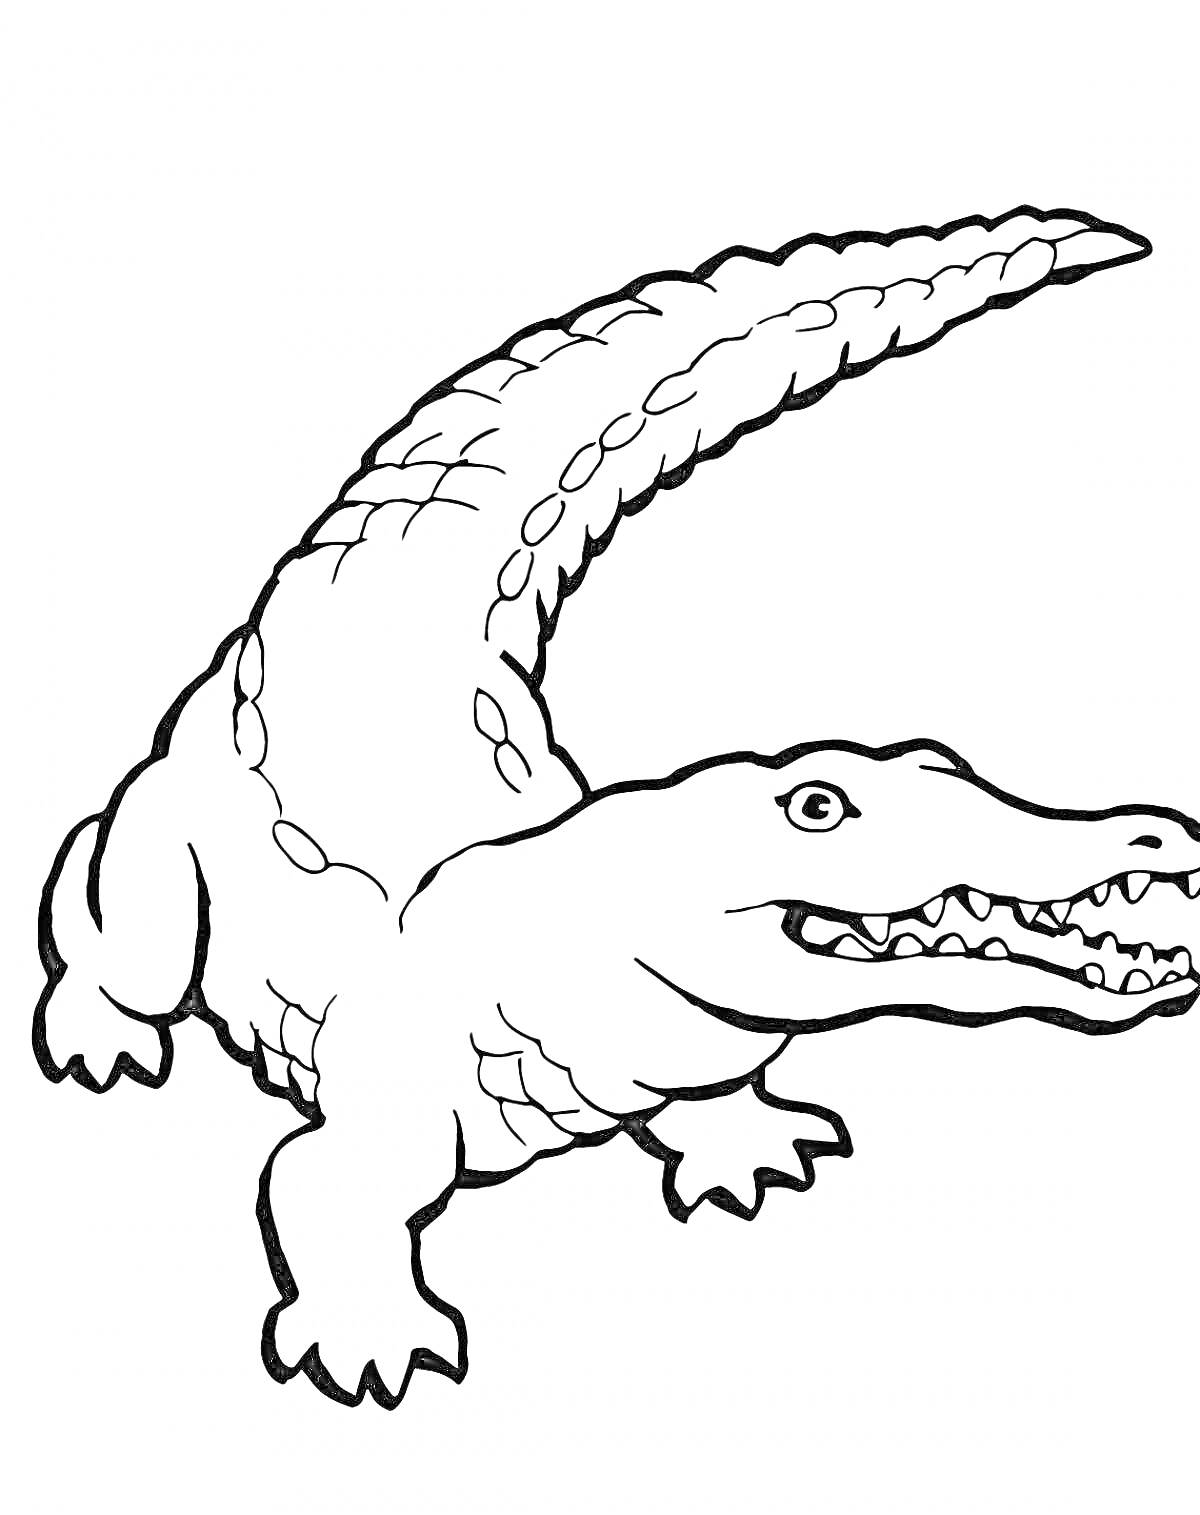 Раскраска Крокодил в движении с длинным хвостом